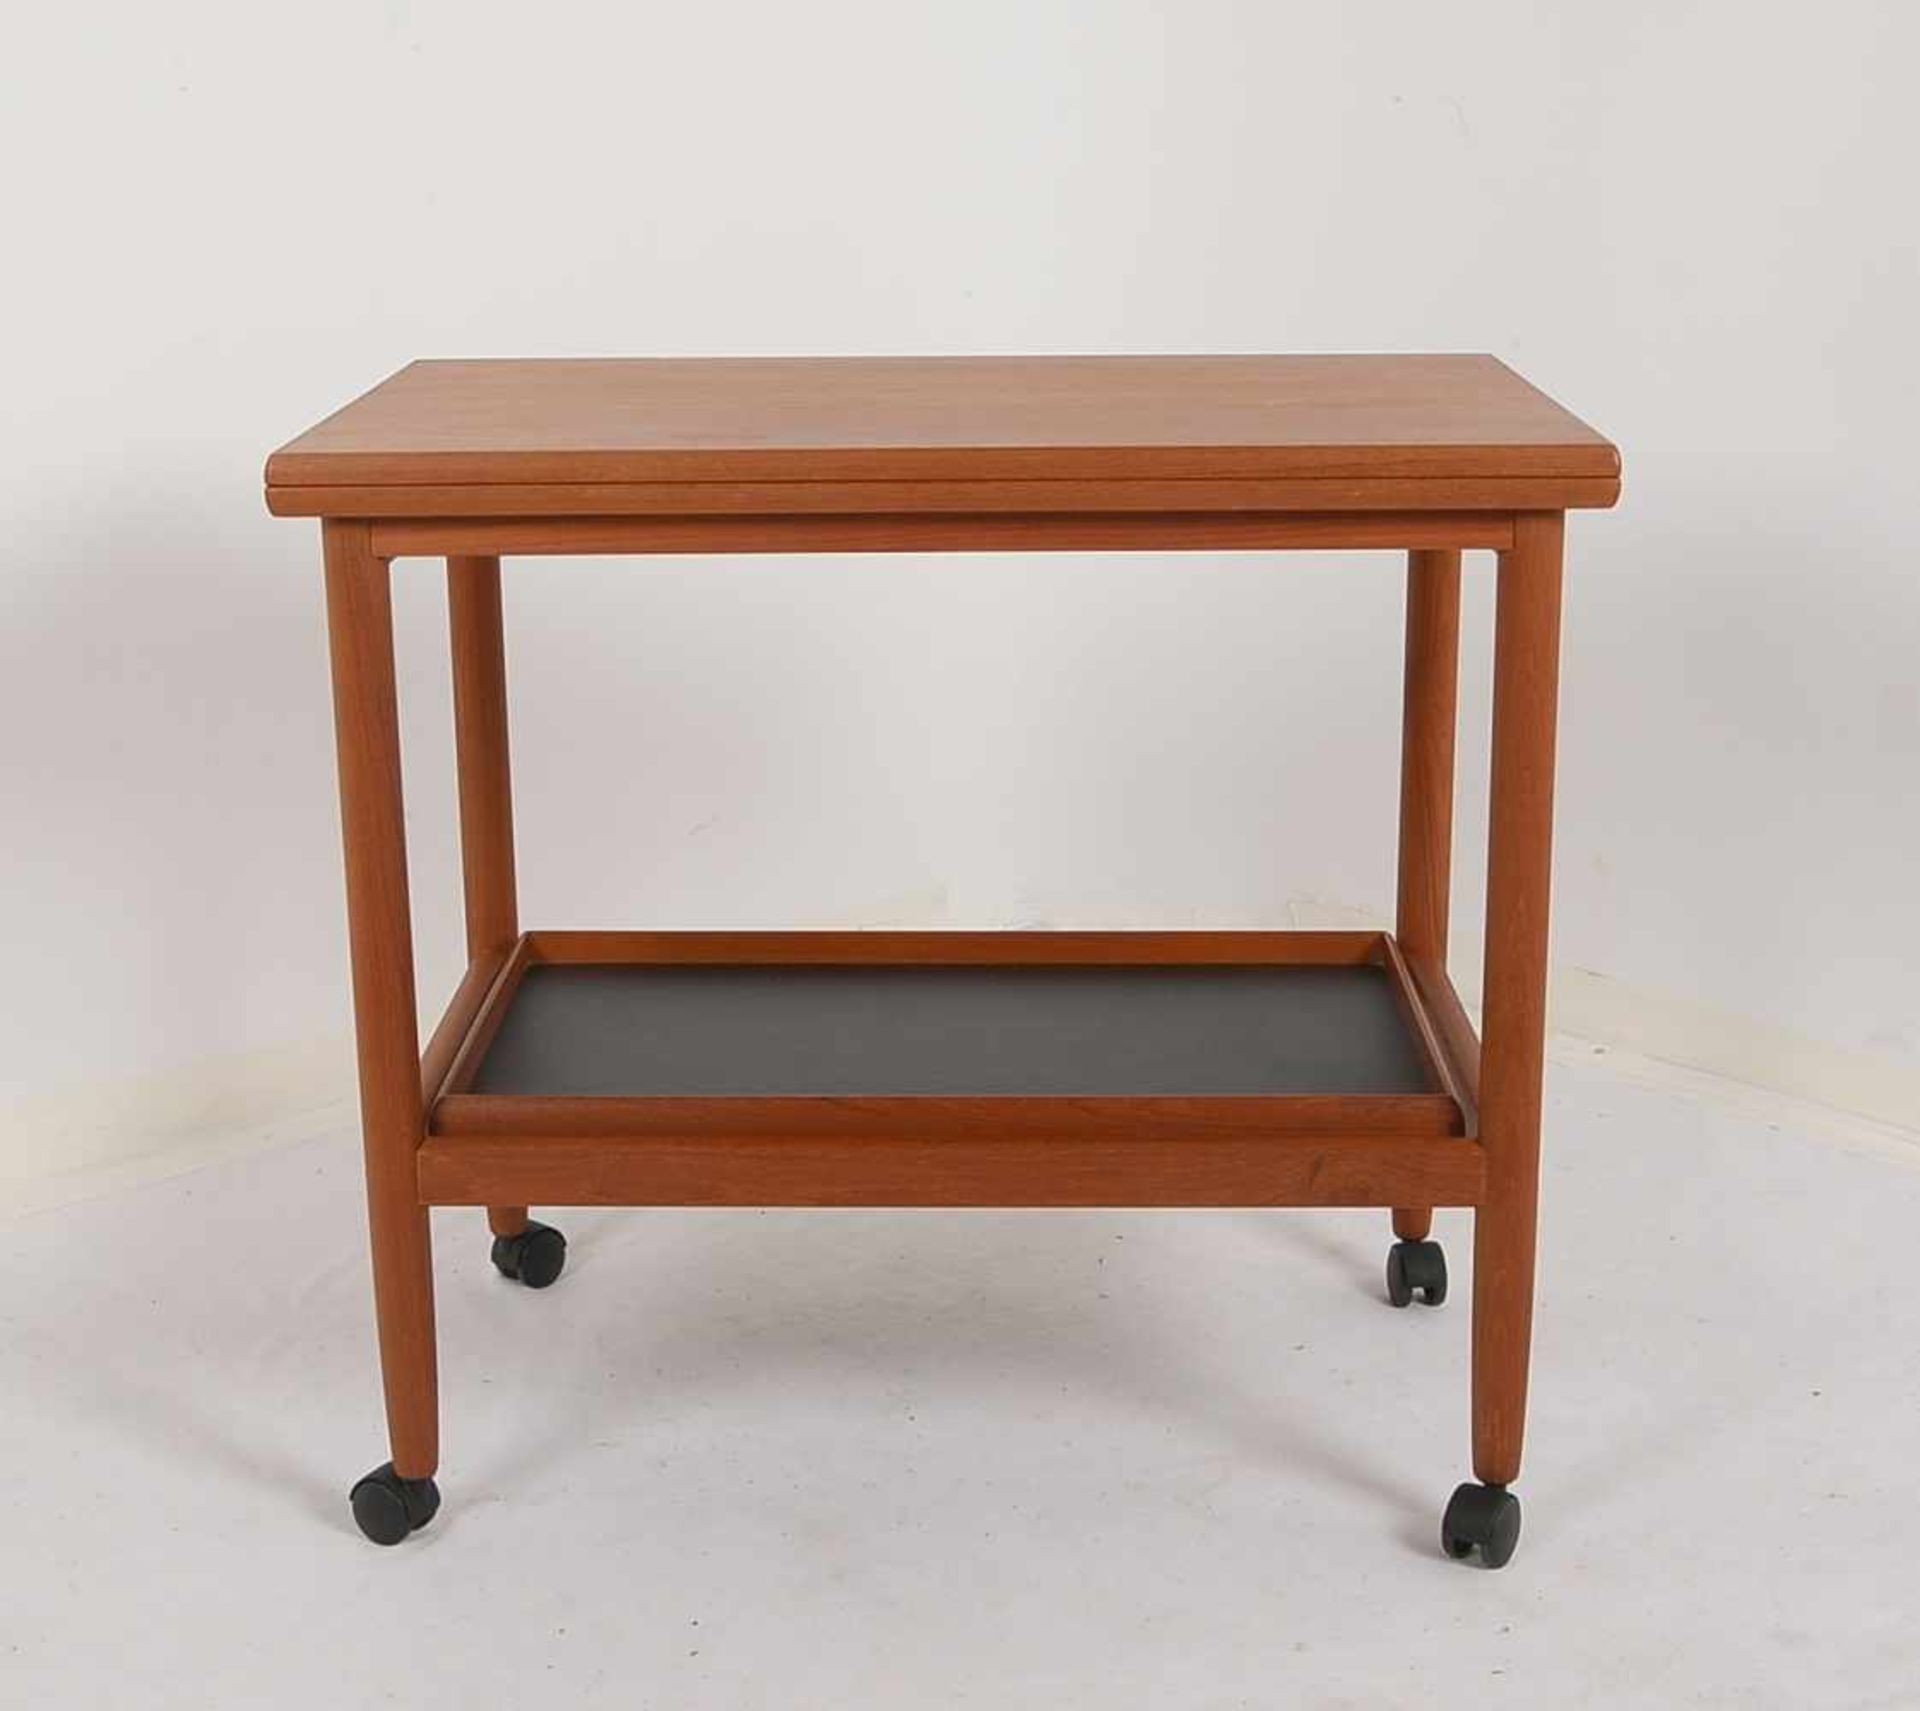 Spieltisch, Dänemark, Teak, Deckplatte ausklappbar/drehbar, untere Ebene als Tablett